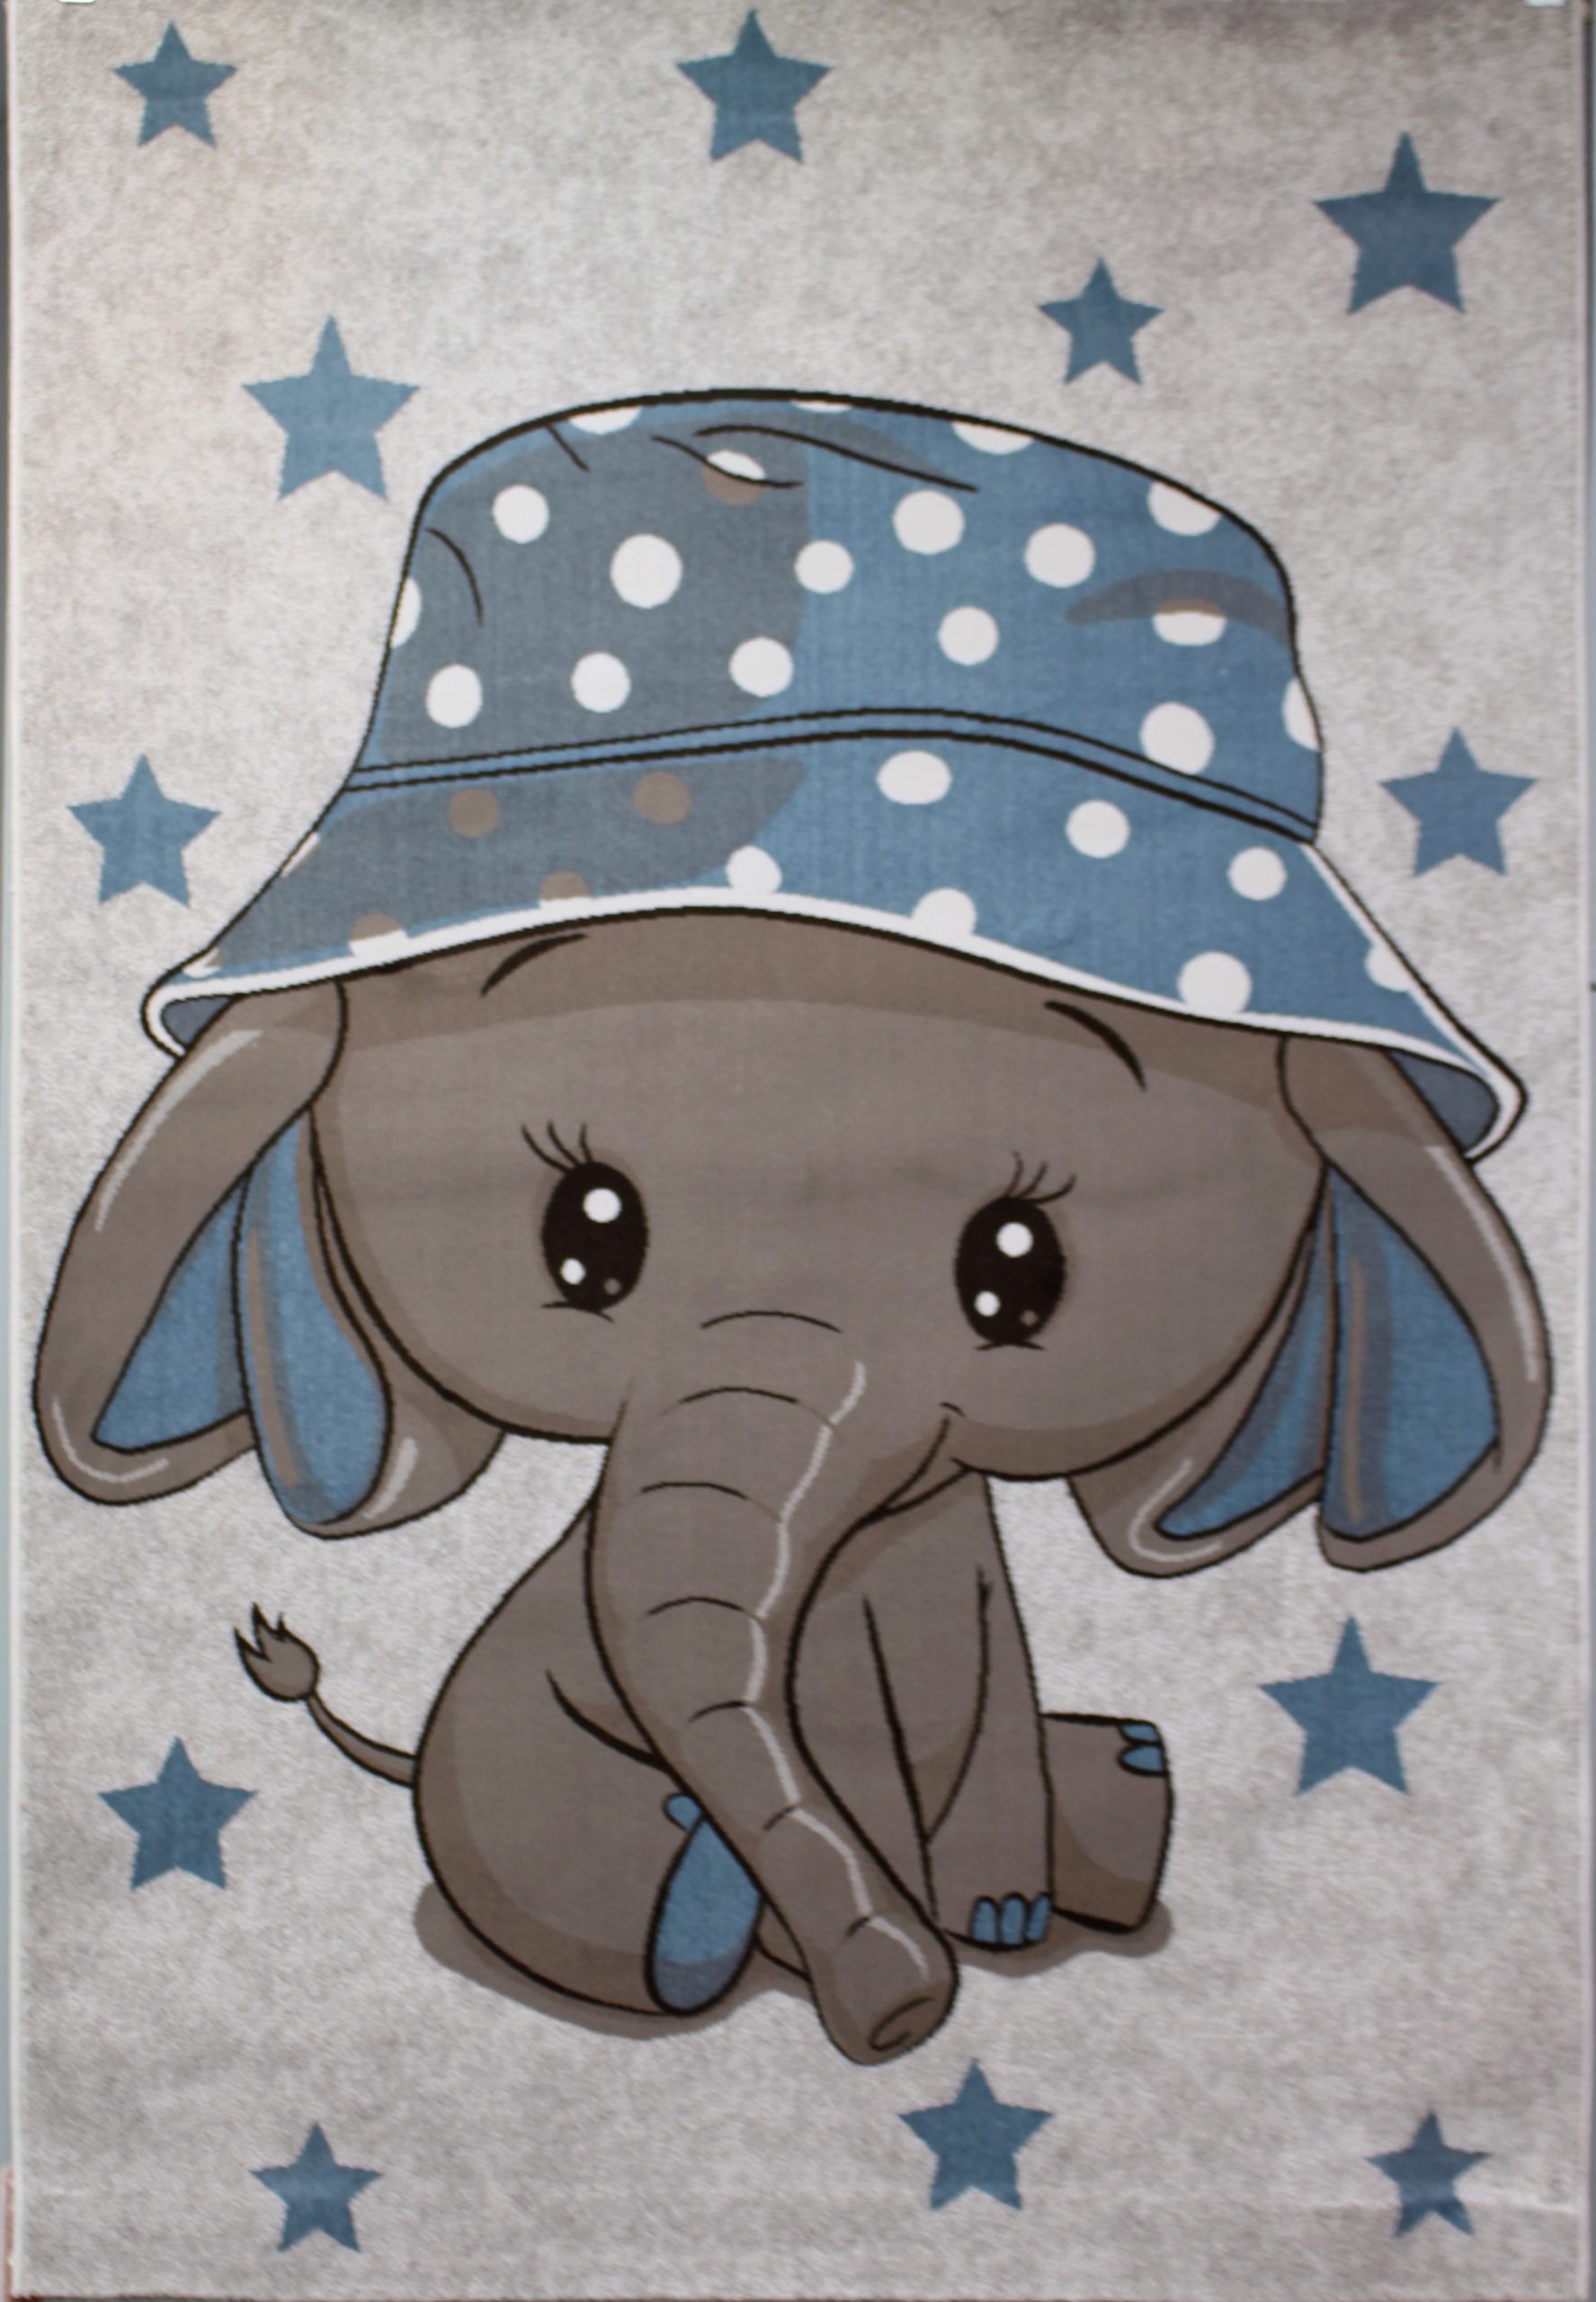 فرش کودک افرند مدل فیل کلاه آبی